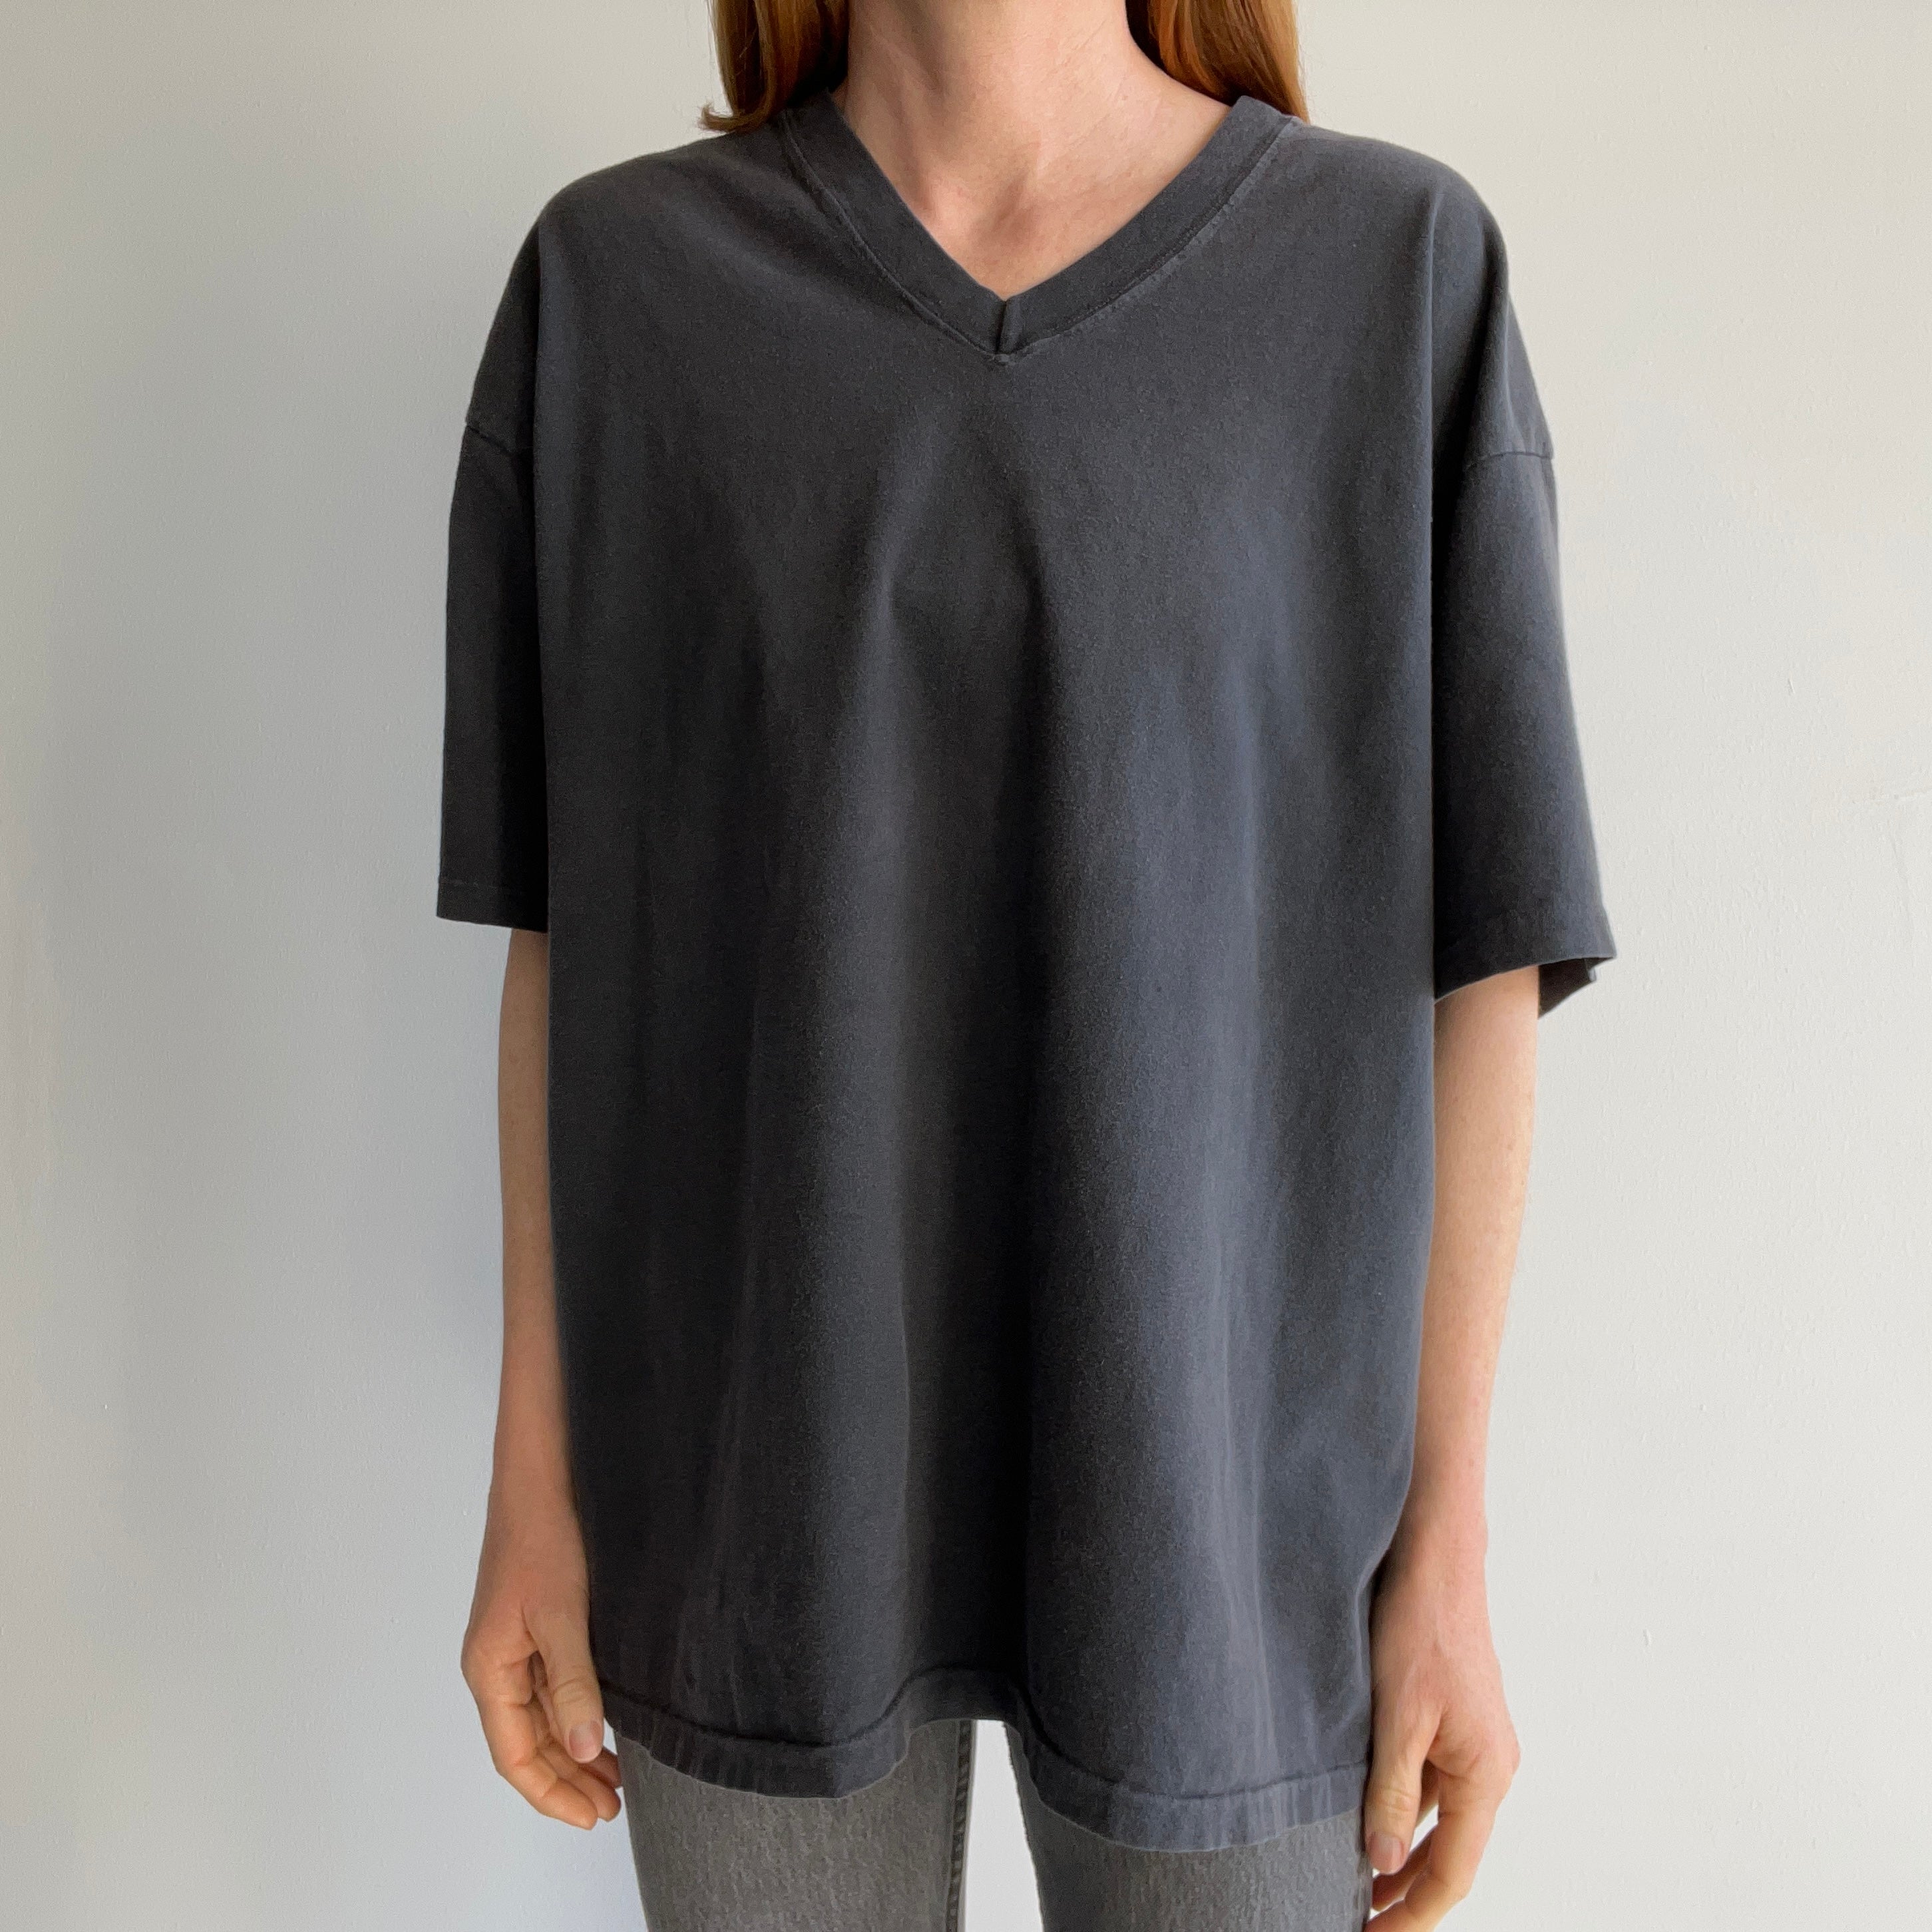 1990s USA Made Gap V-Neck Faded Black Cotton T-Shirt